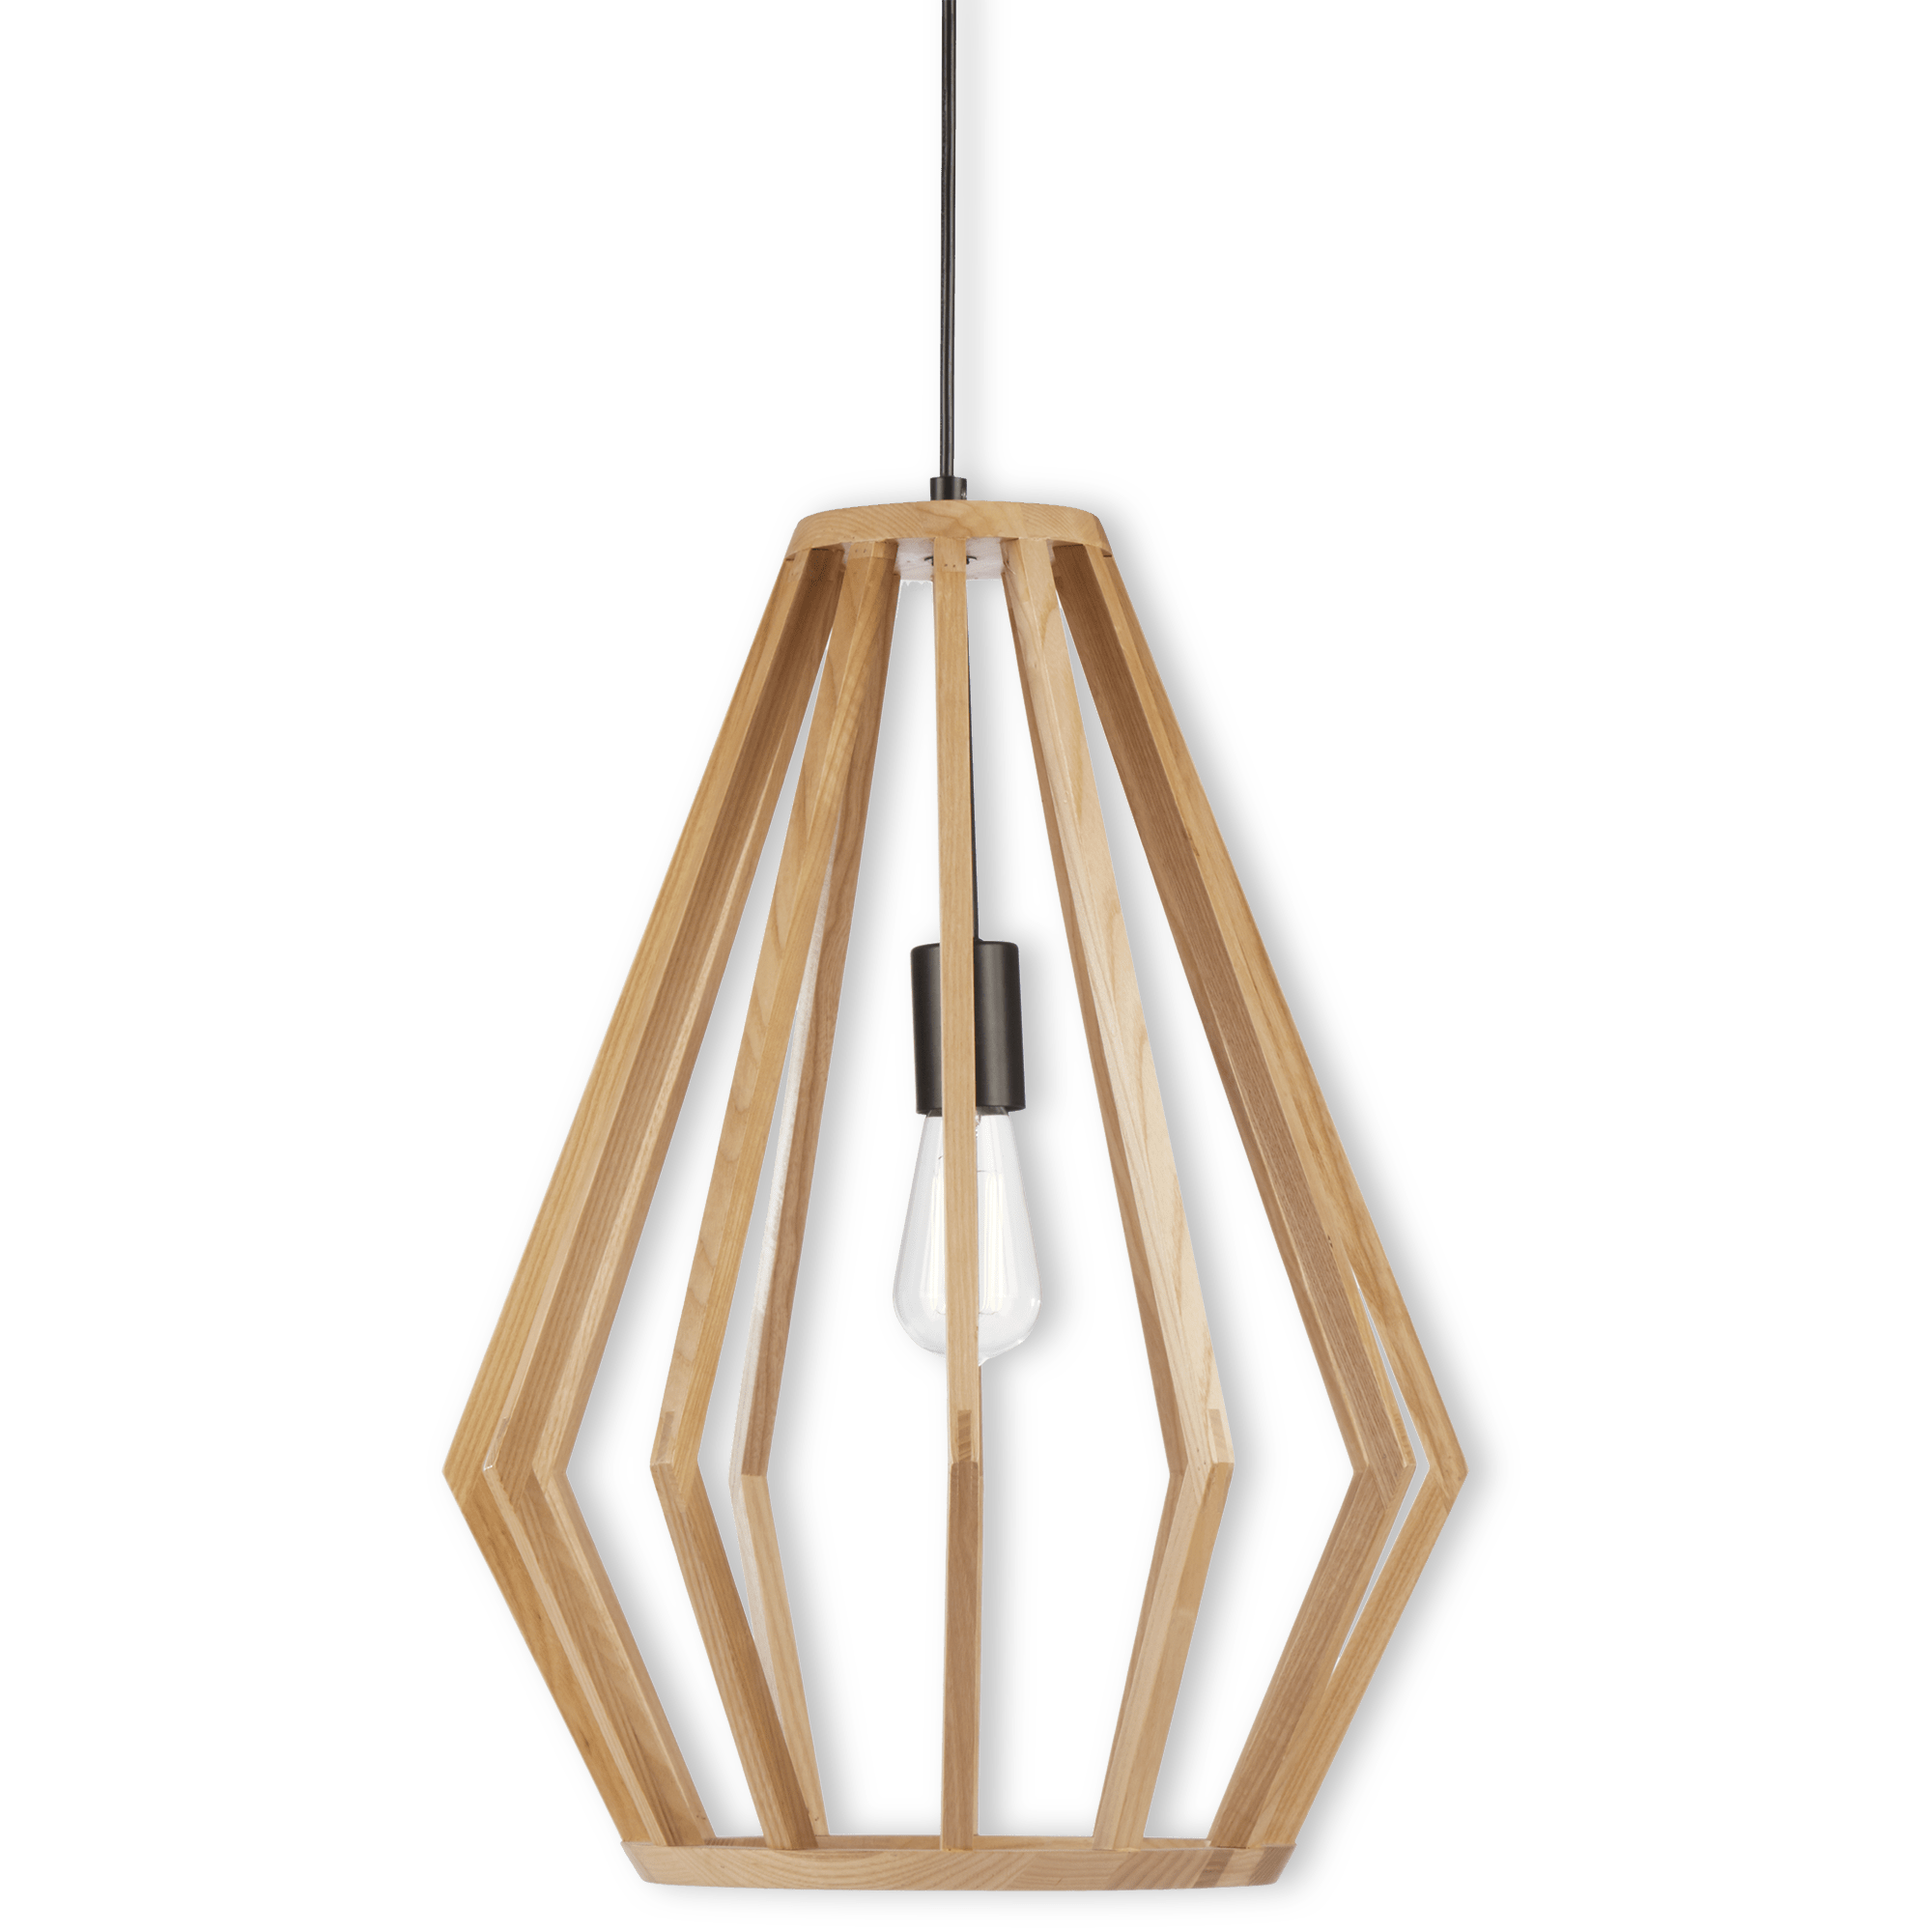 Hanging lamp in openwork wood